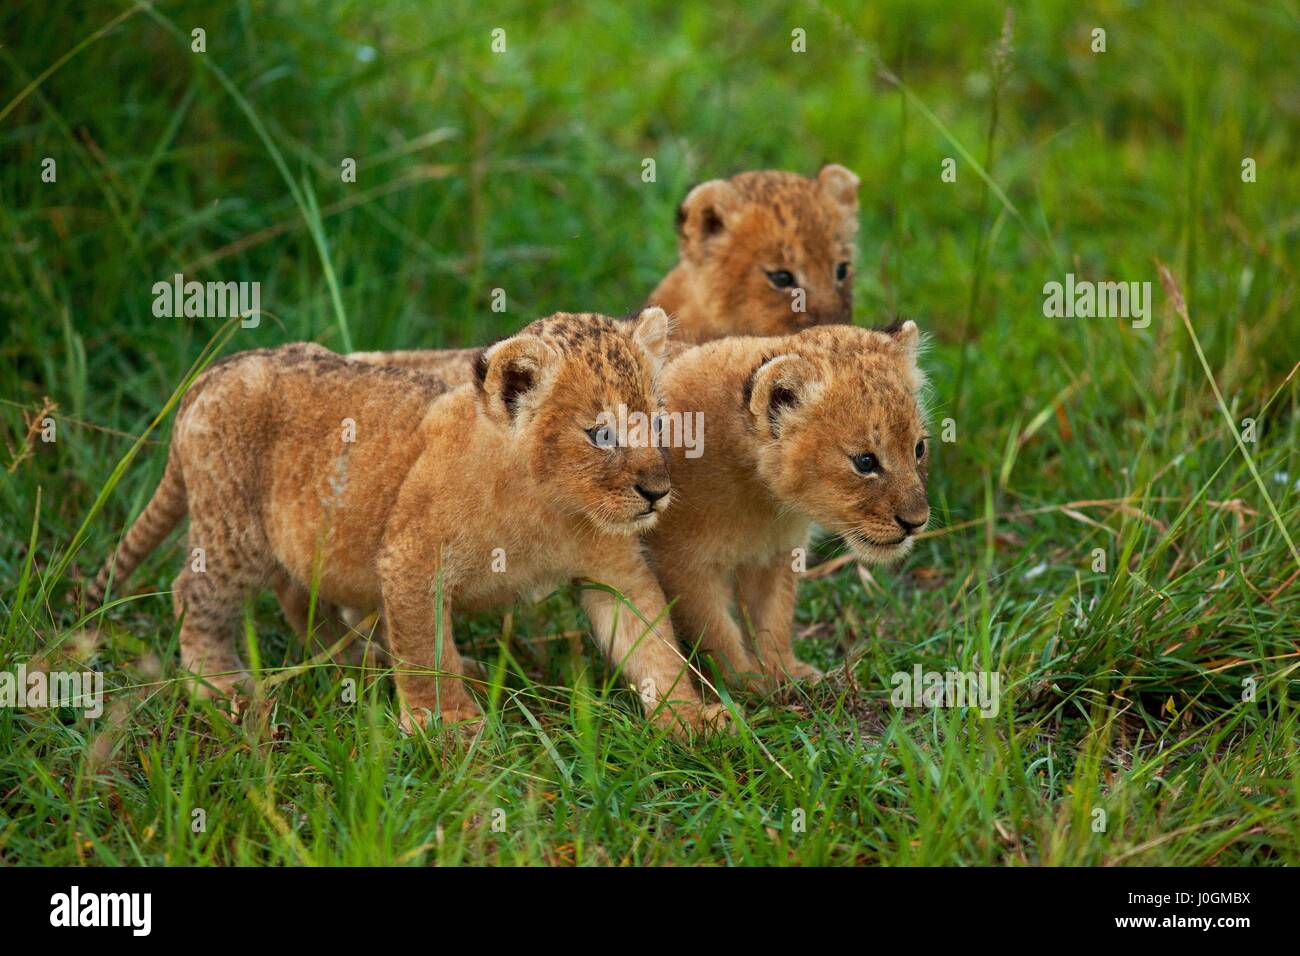 lions Stock Photo